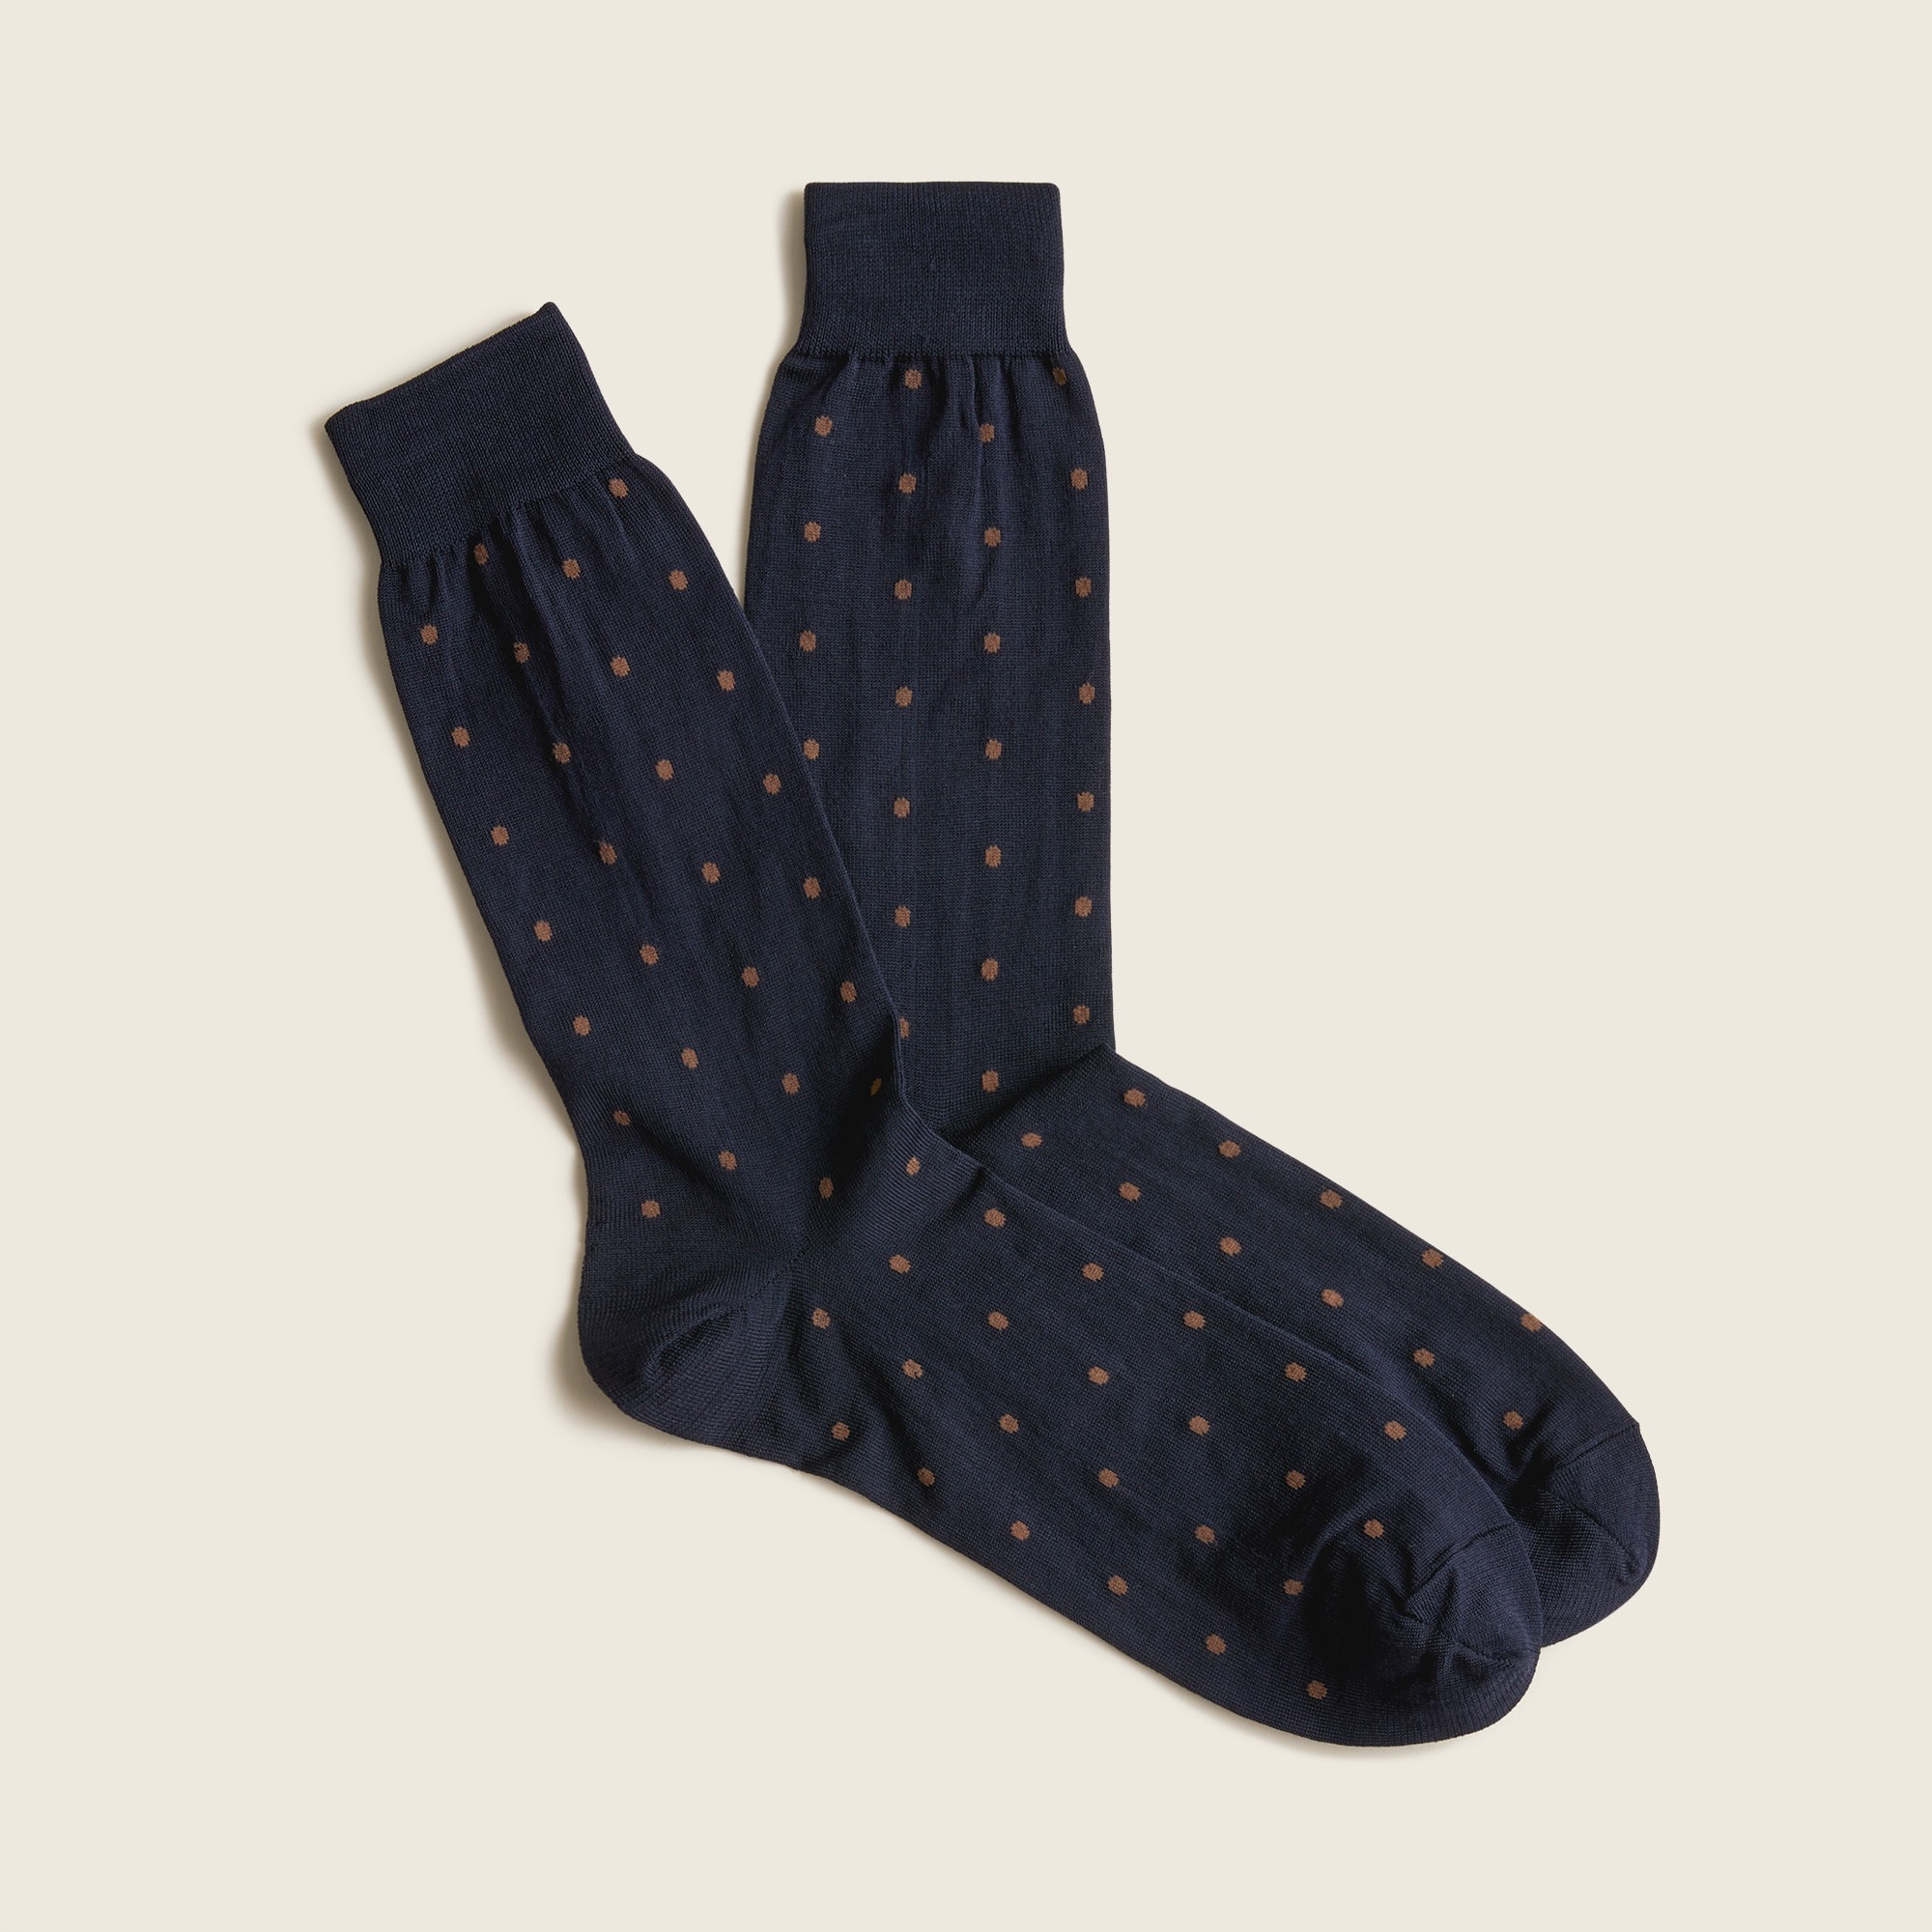 J.Crew: Polka Dot Dress Socks For Men